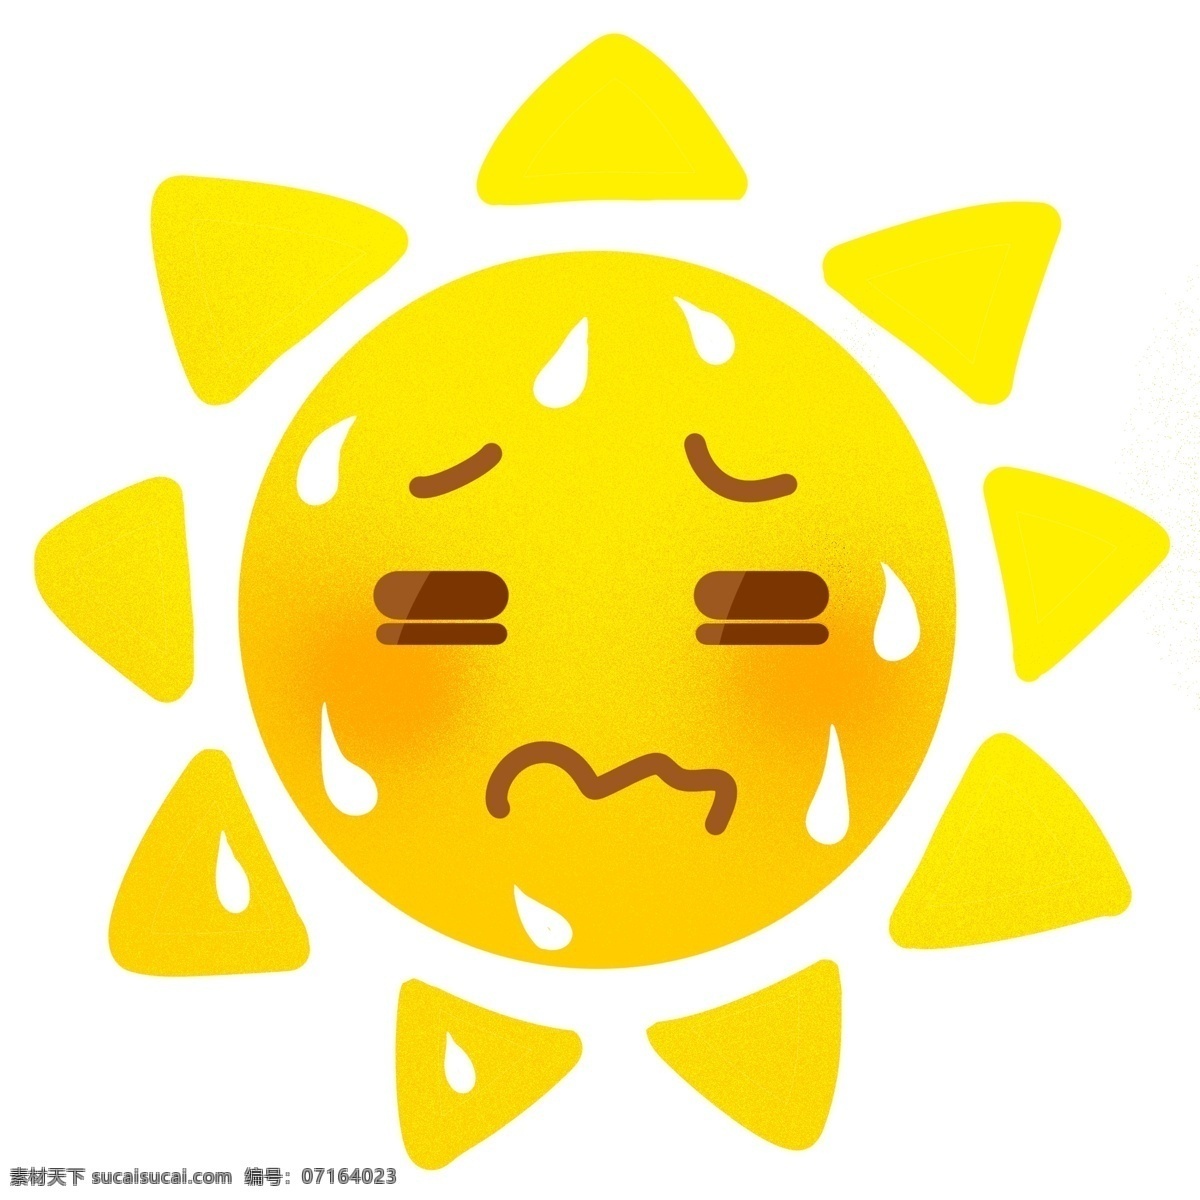 日月星辰 太阳 烈日 表情 卡通 可爱 天气 阳光 行星